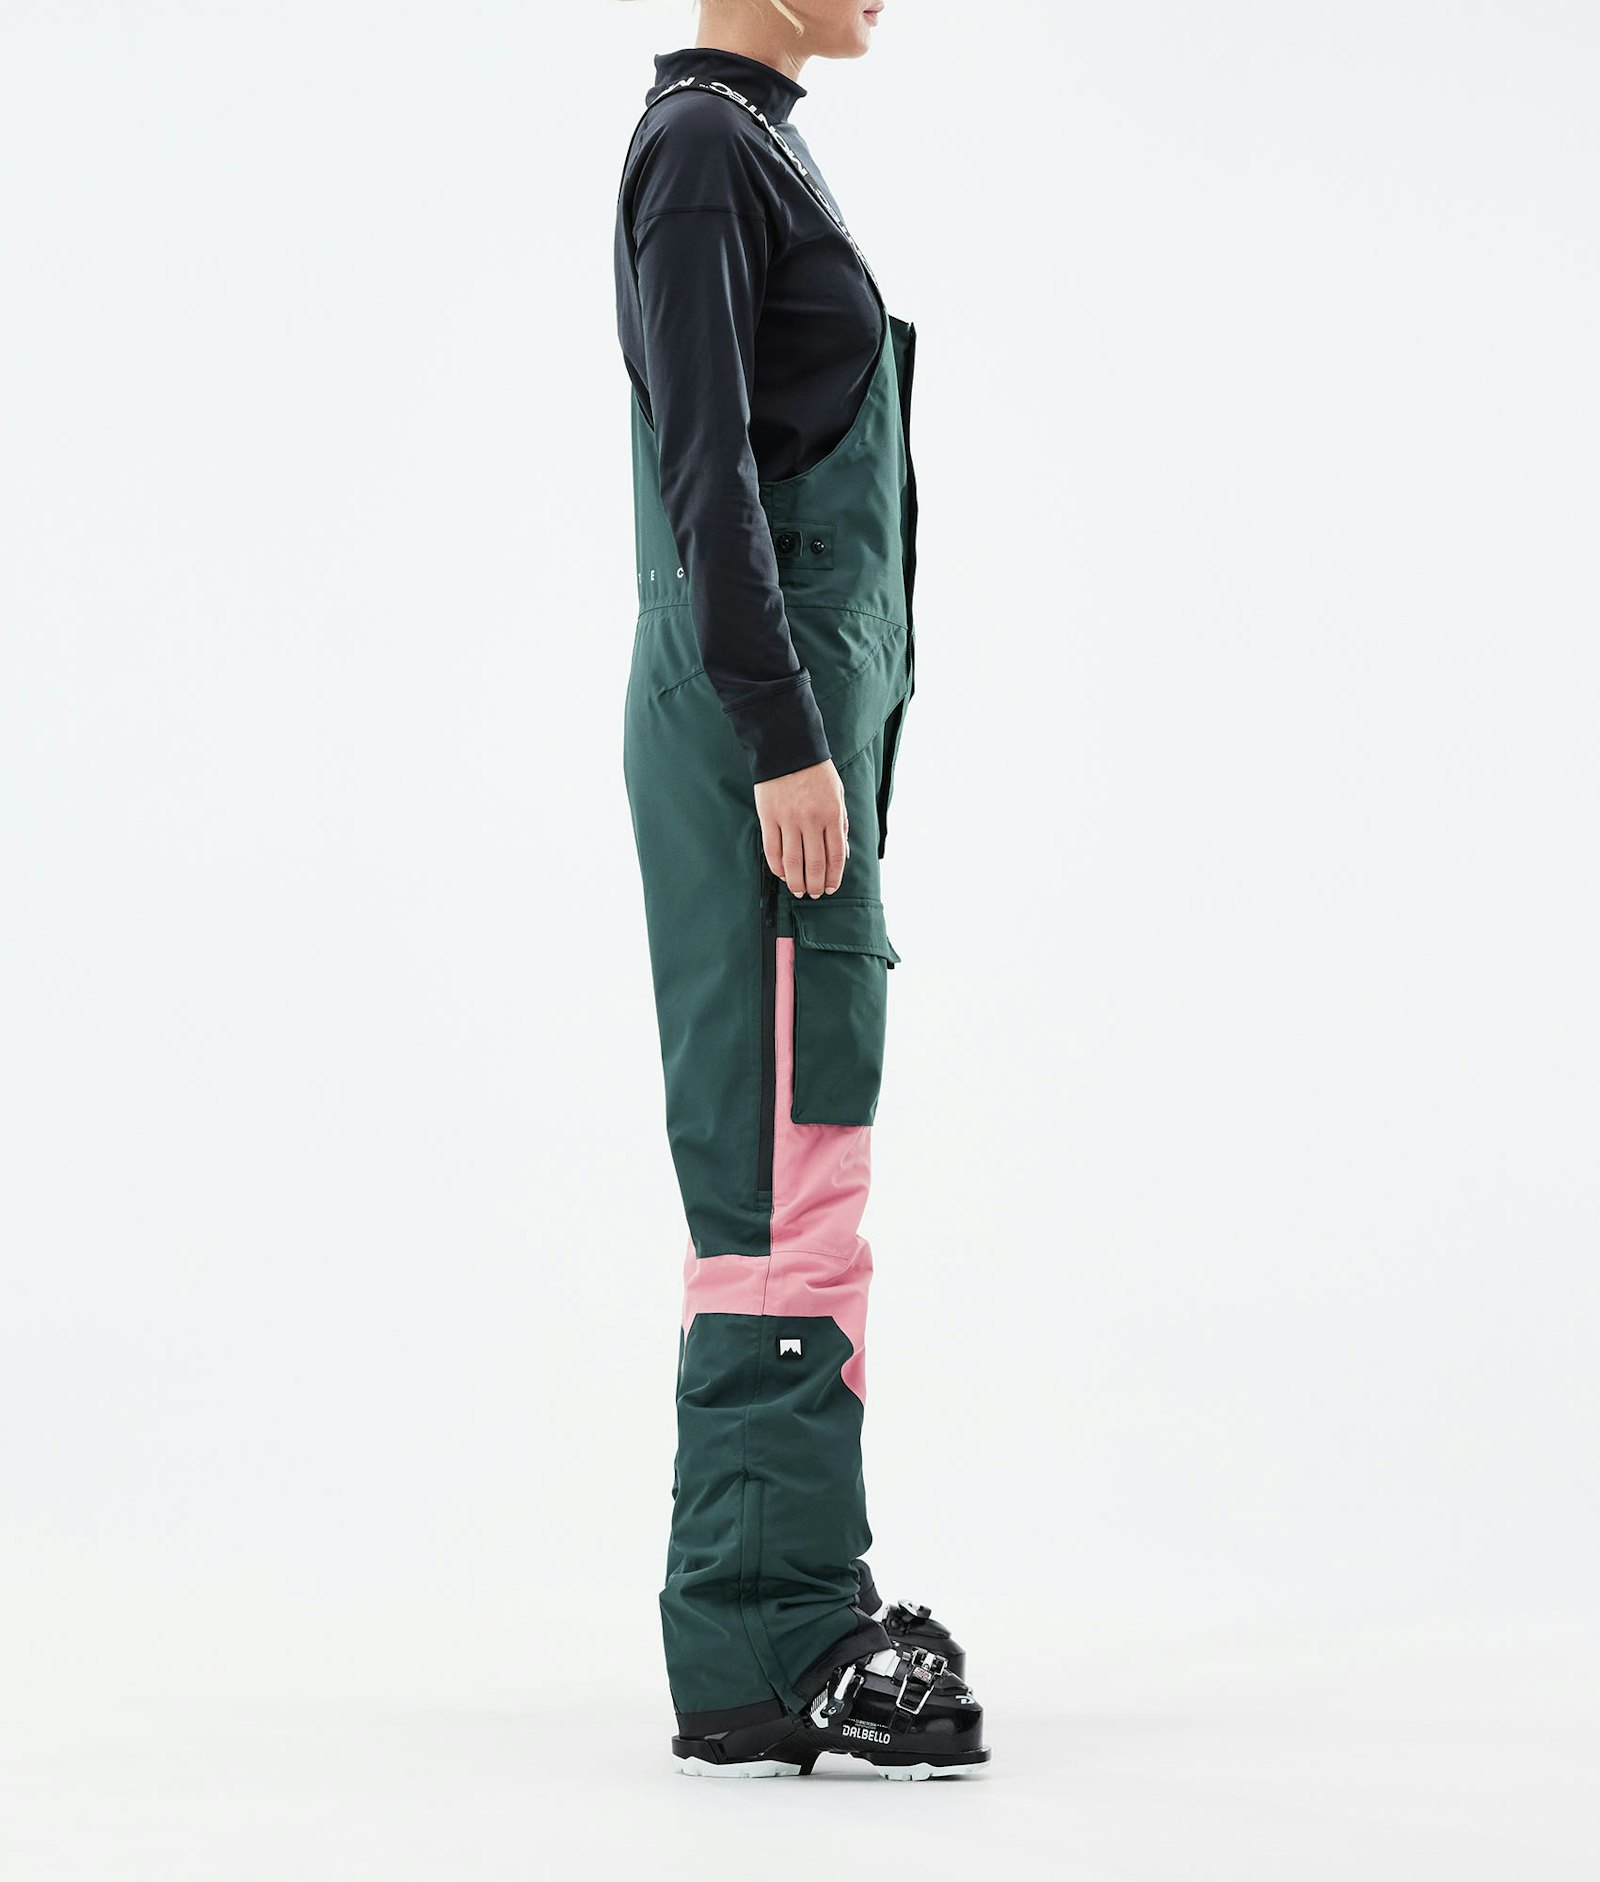 Fawk W 2021 Ski Pants Women Dark Atlantic/Pink, Image 2 of 6